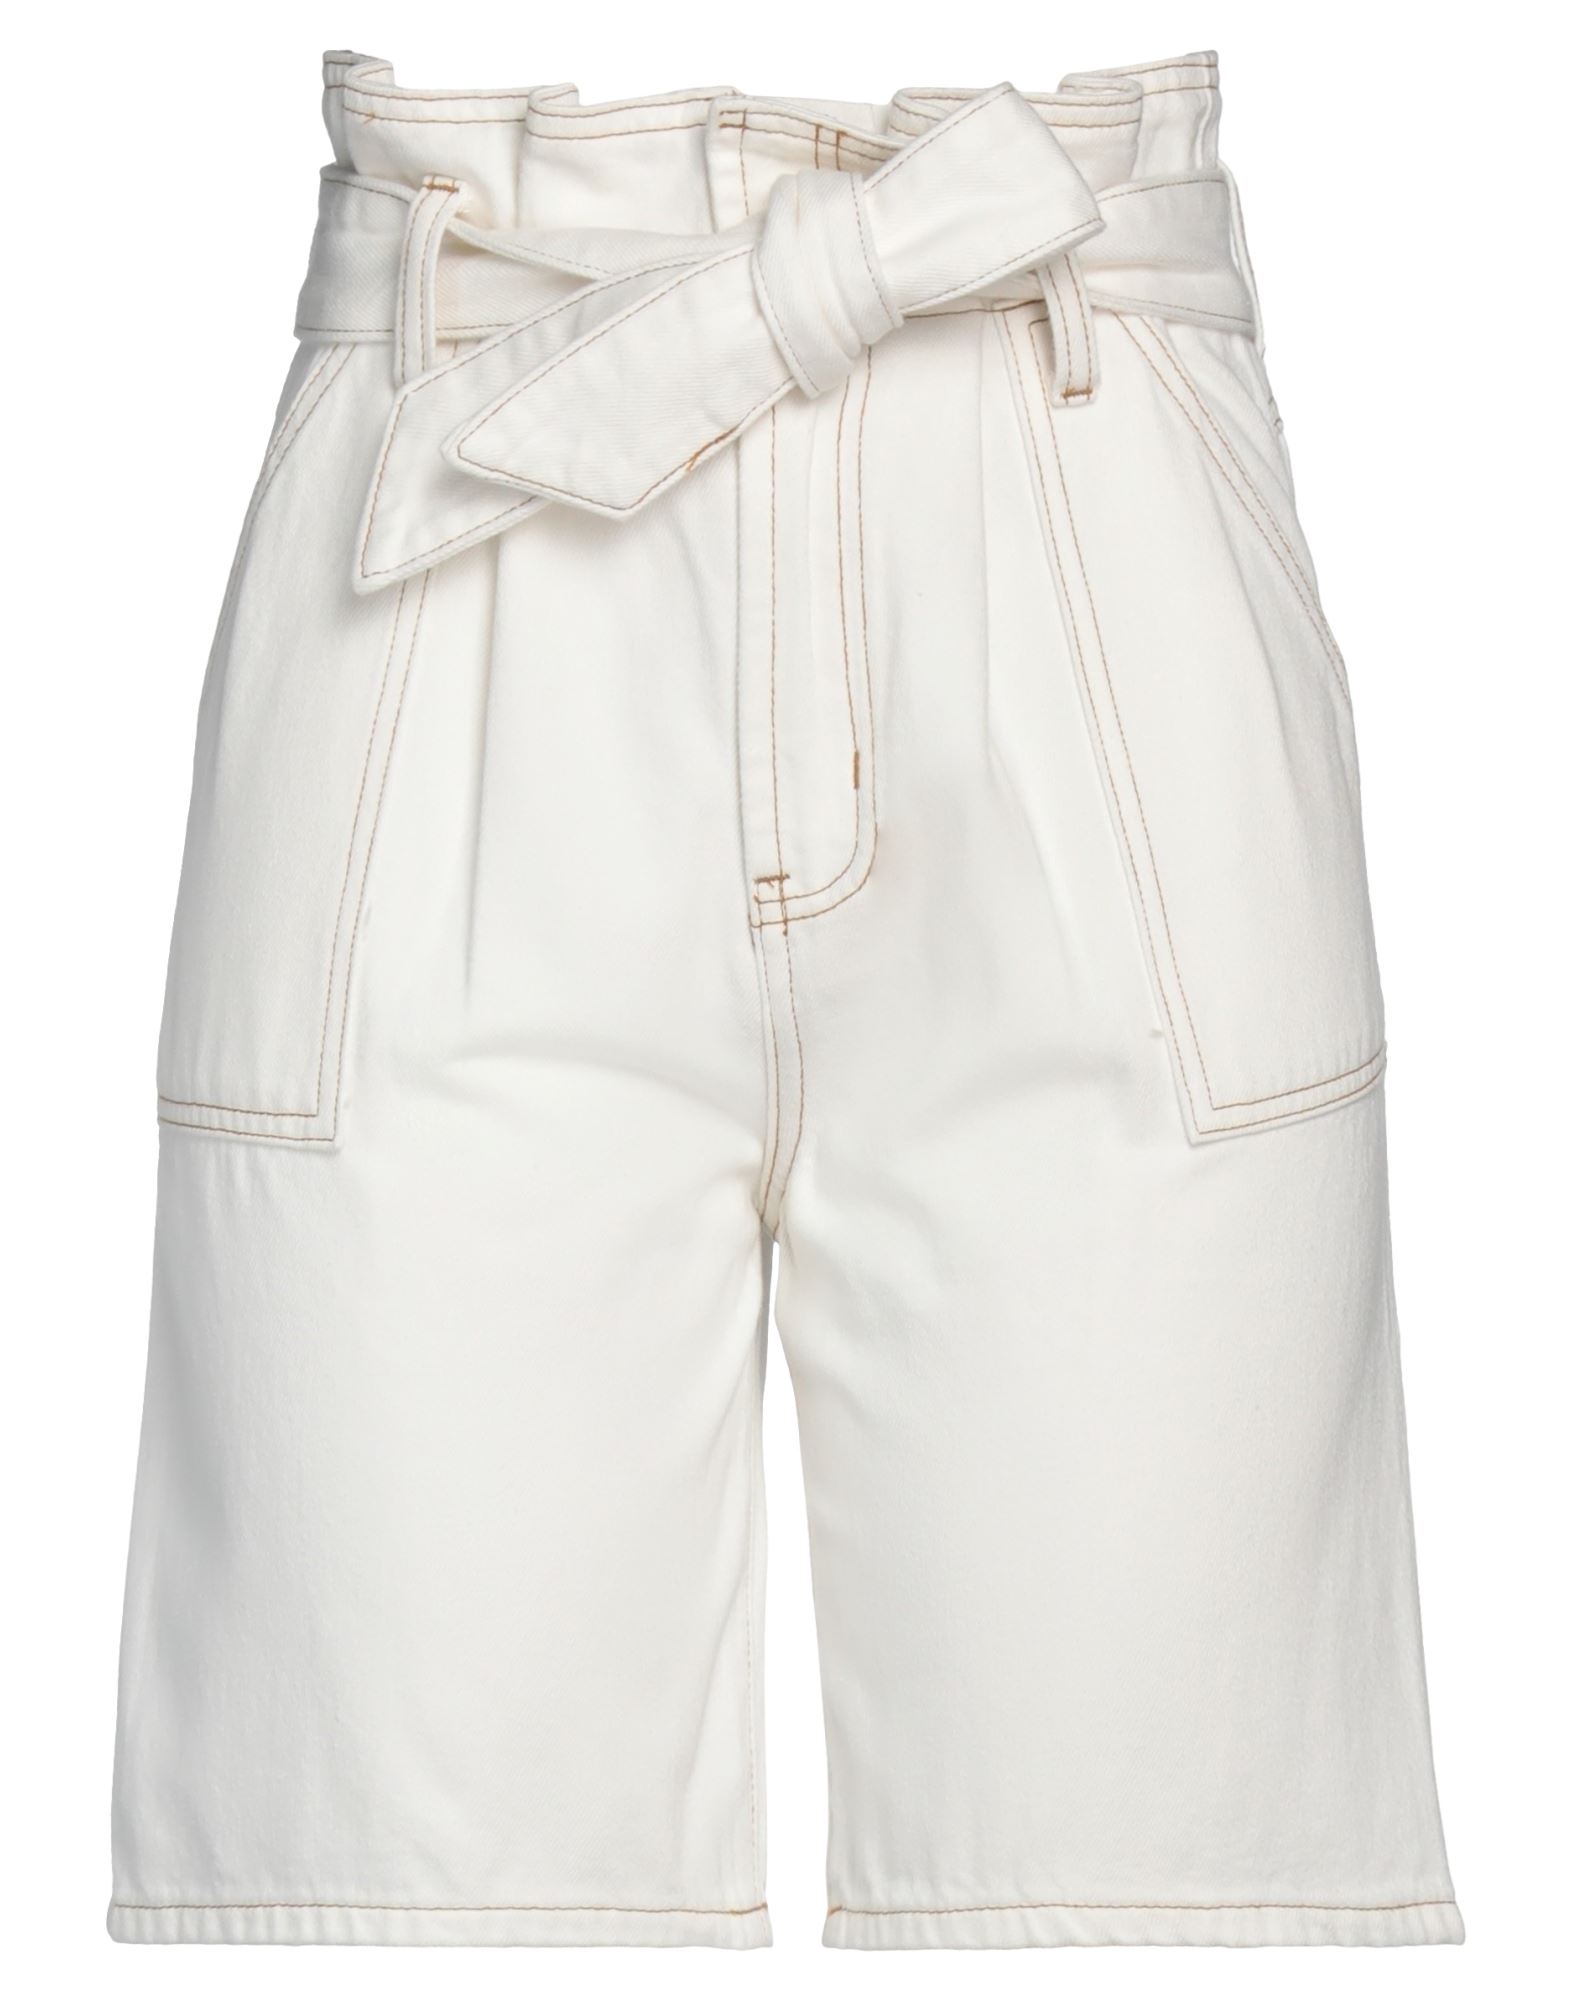 Isabelle Blanche Paris Denim Shorts In White